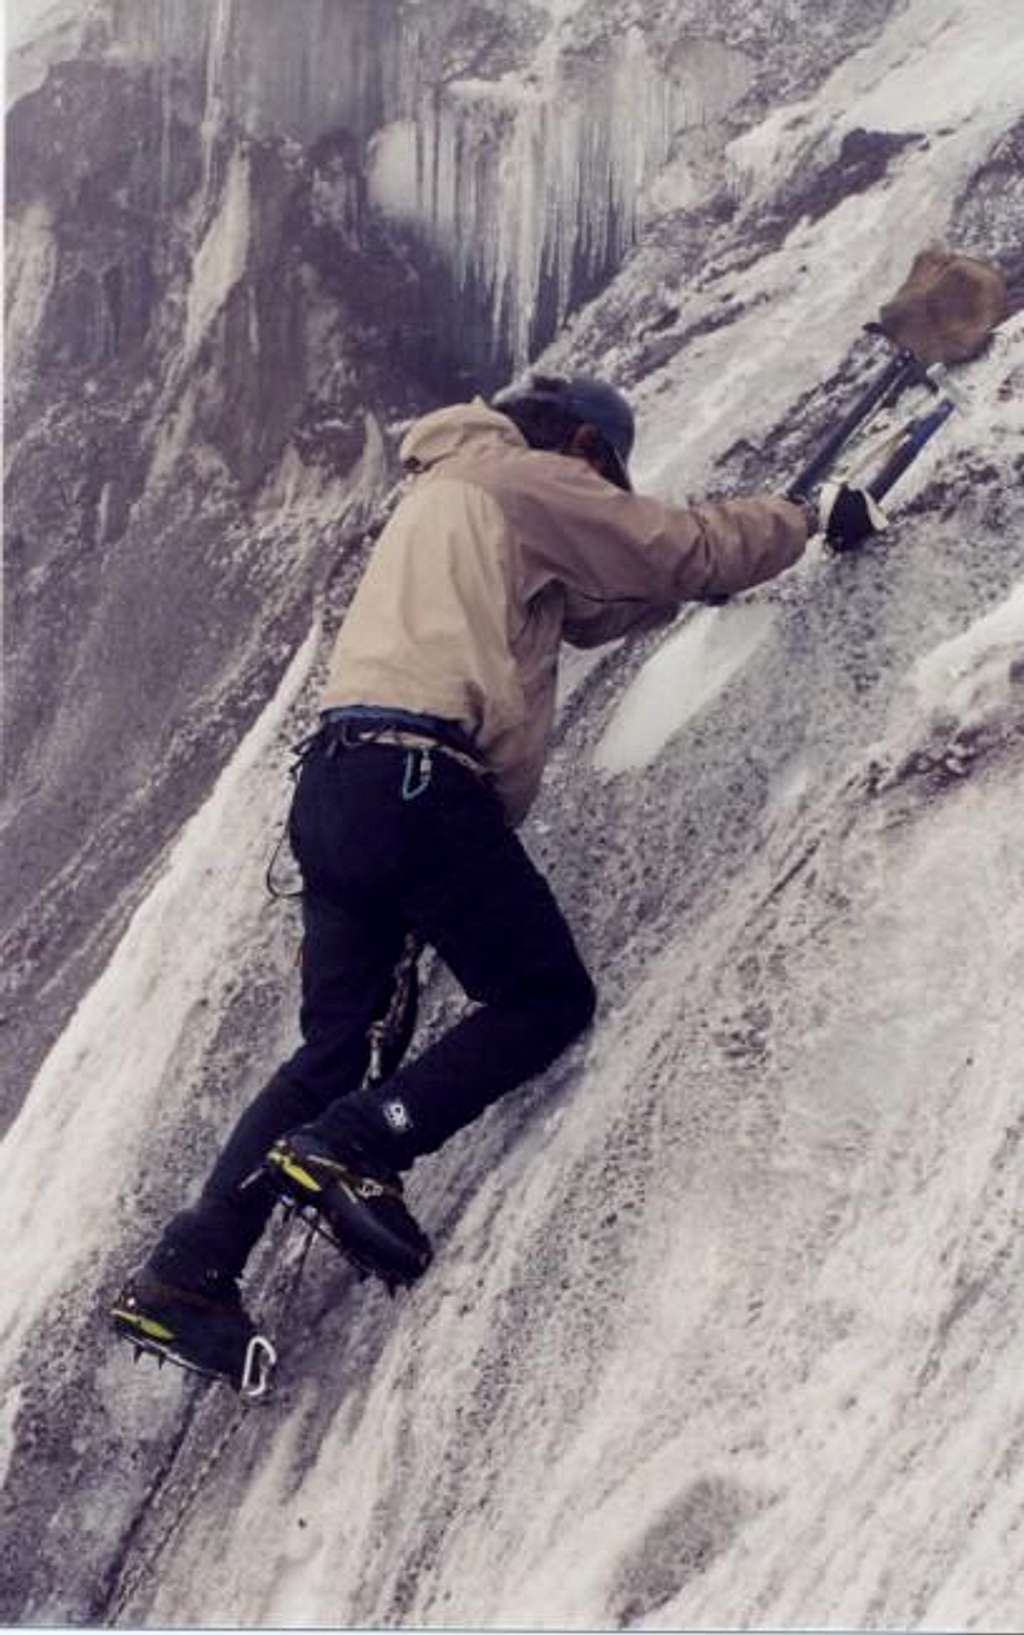 Ice climbing